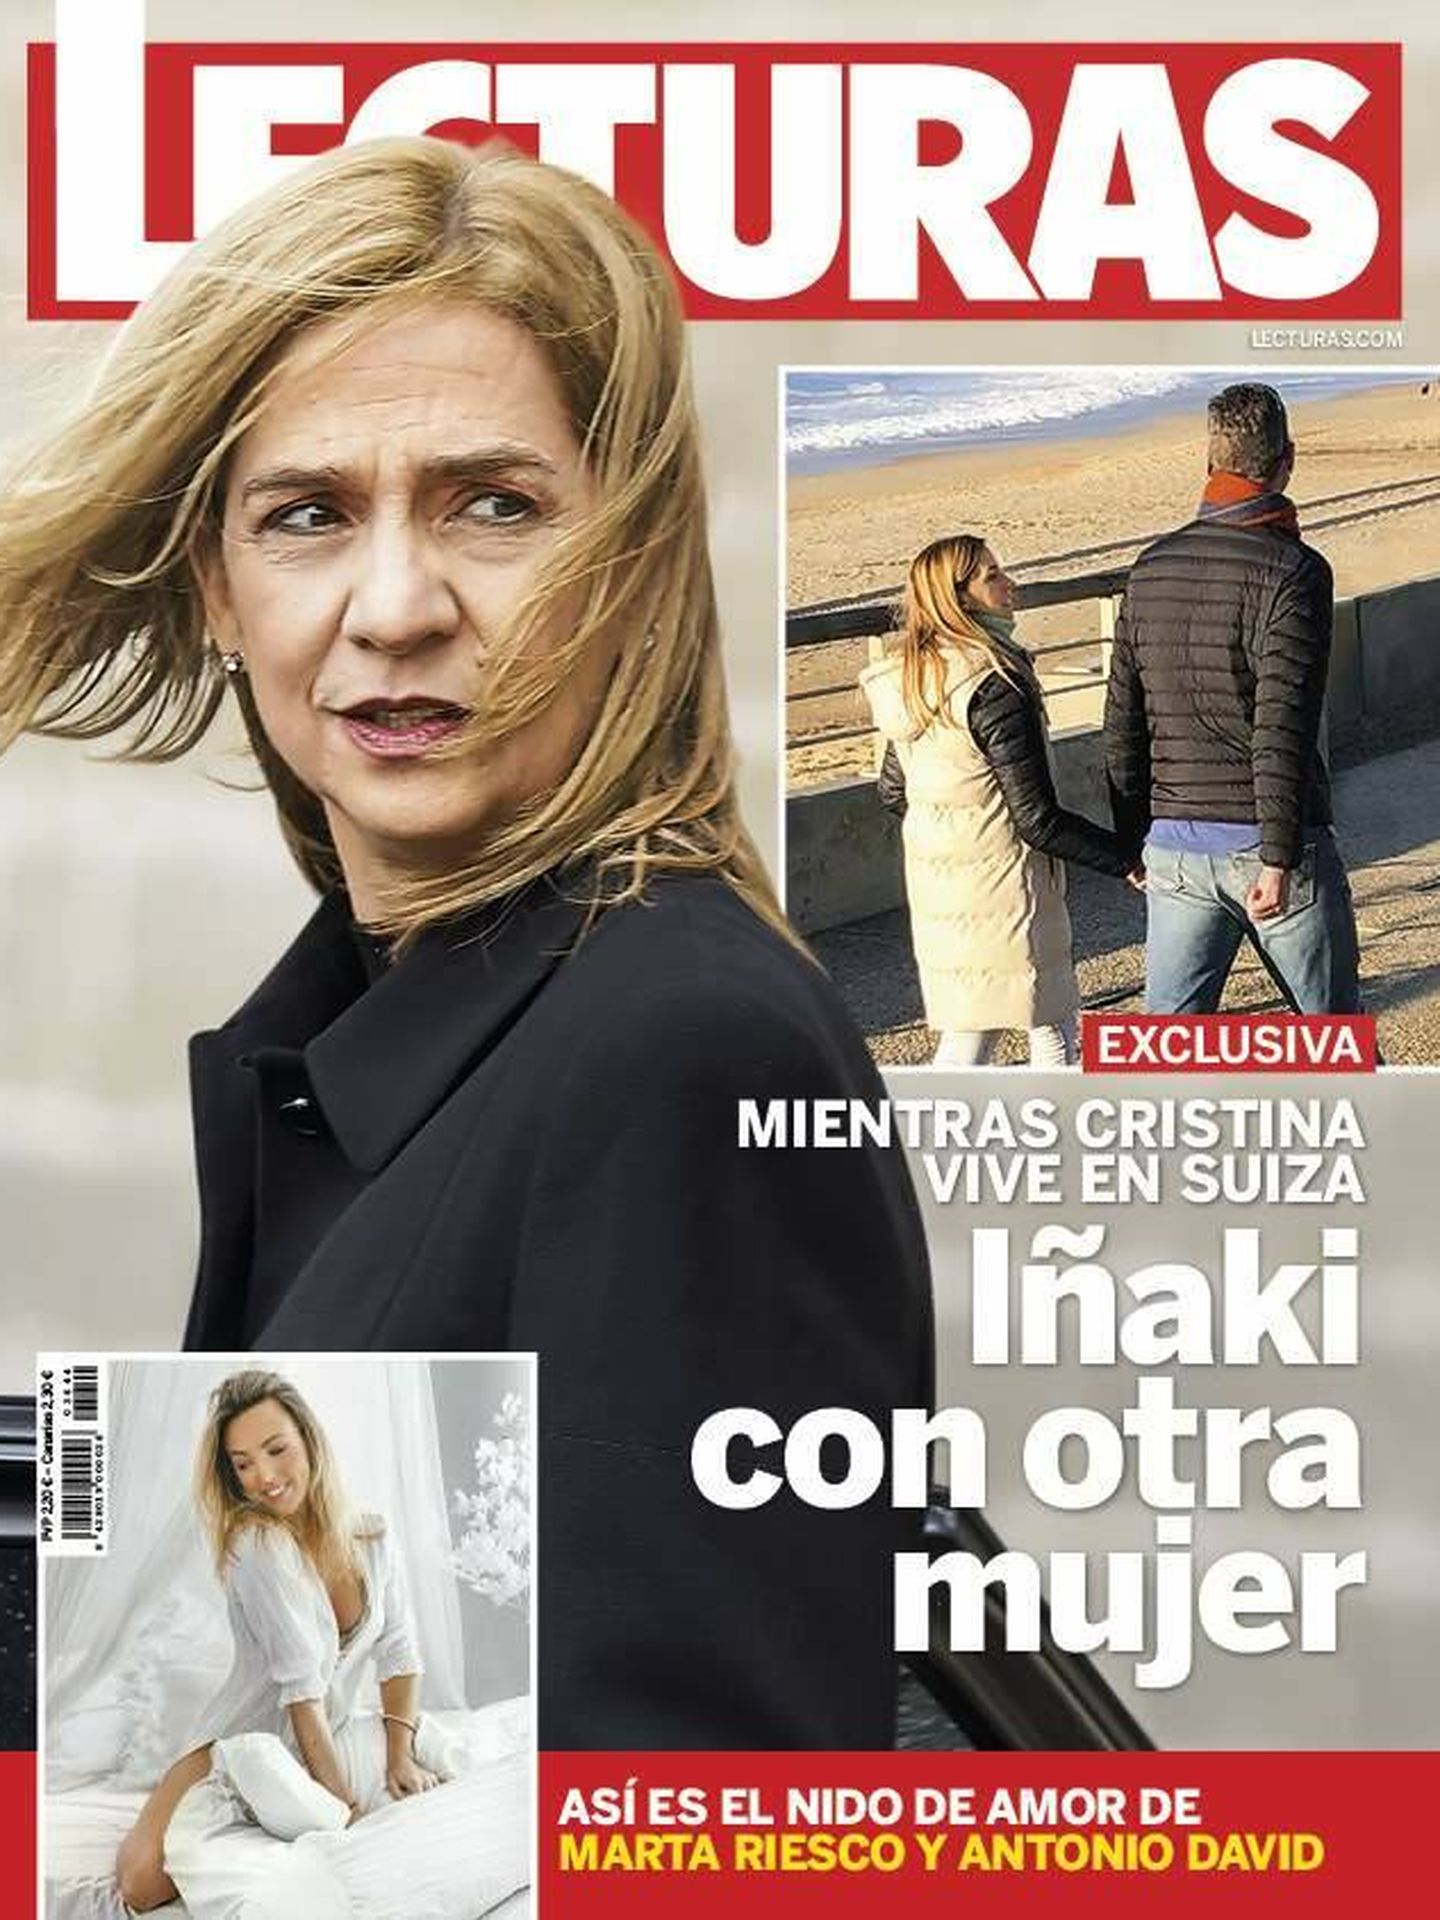 La portada de 'Lecturas' que ha desencadenado la interrupción del matrimonio de la infanta Cristina. 